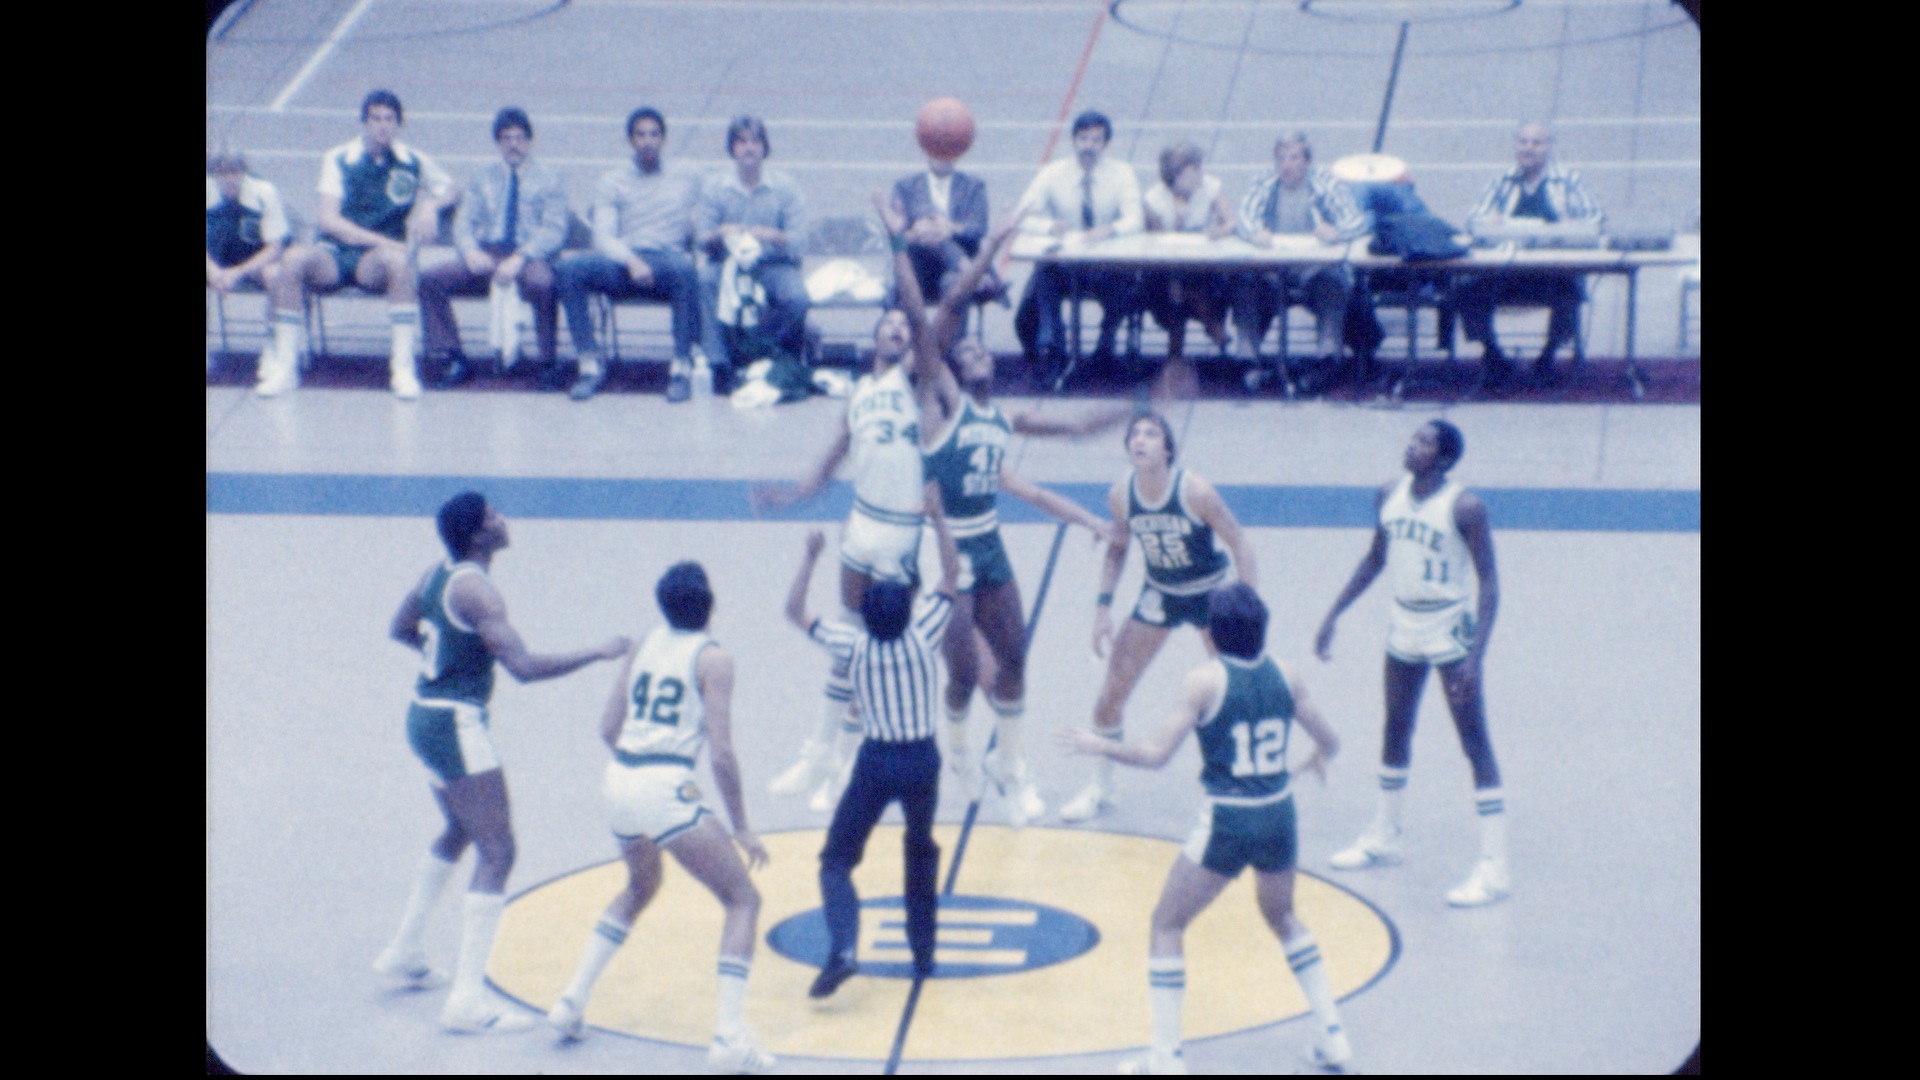 MSU Men's Basketball Scrimmage, 1980